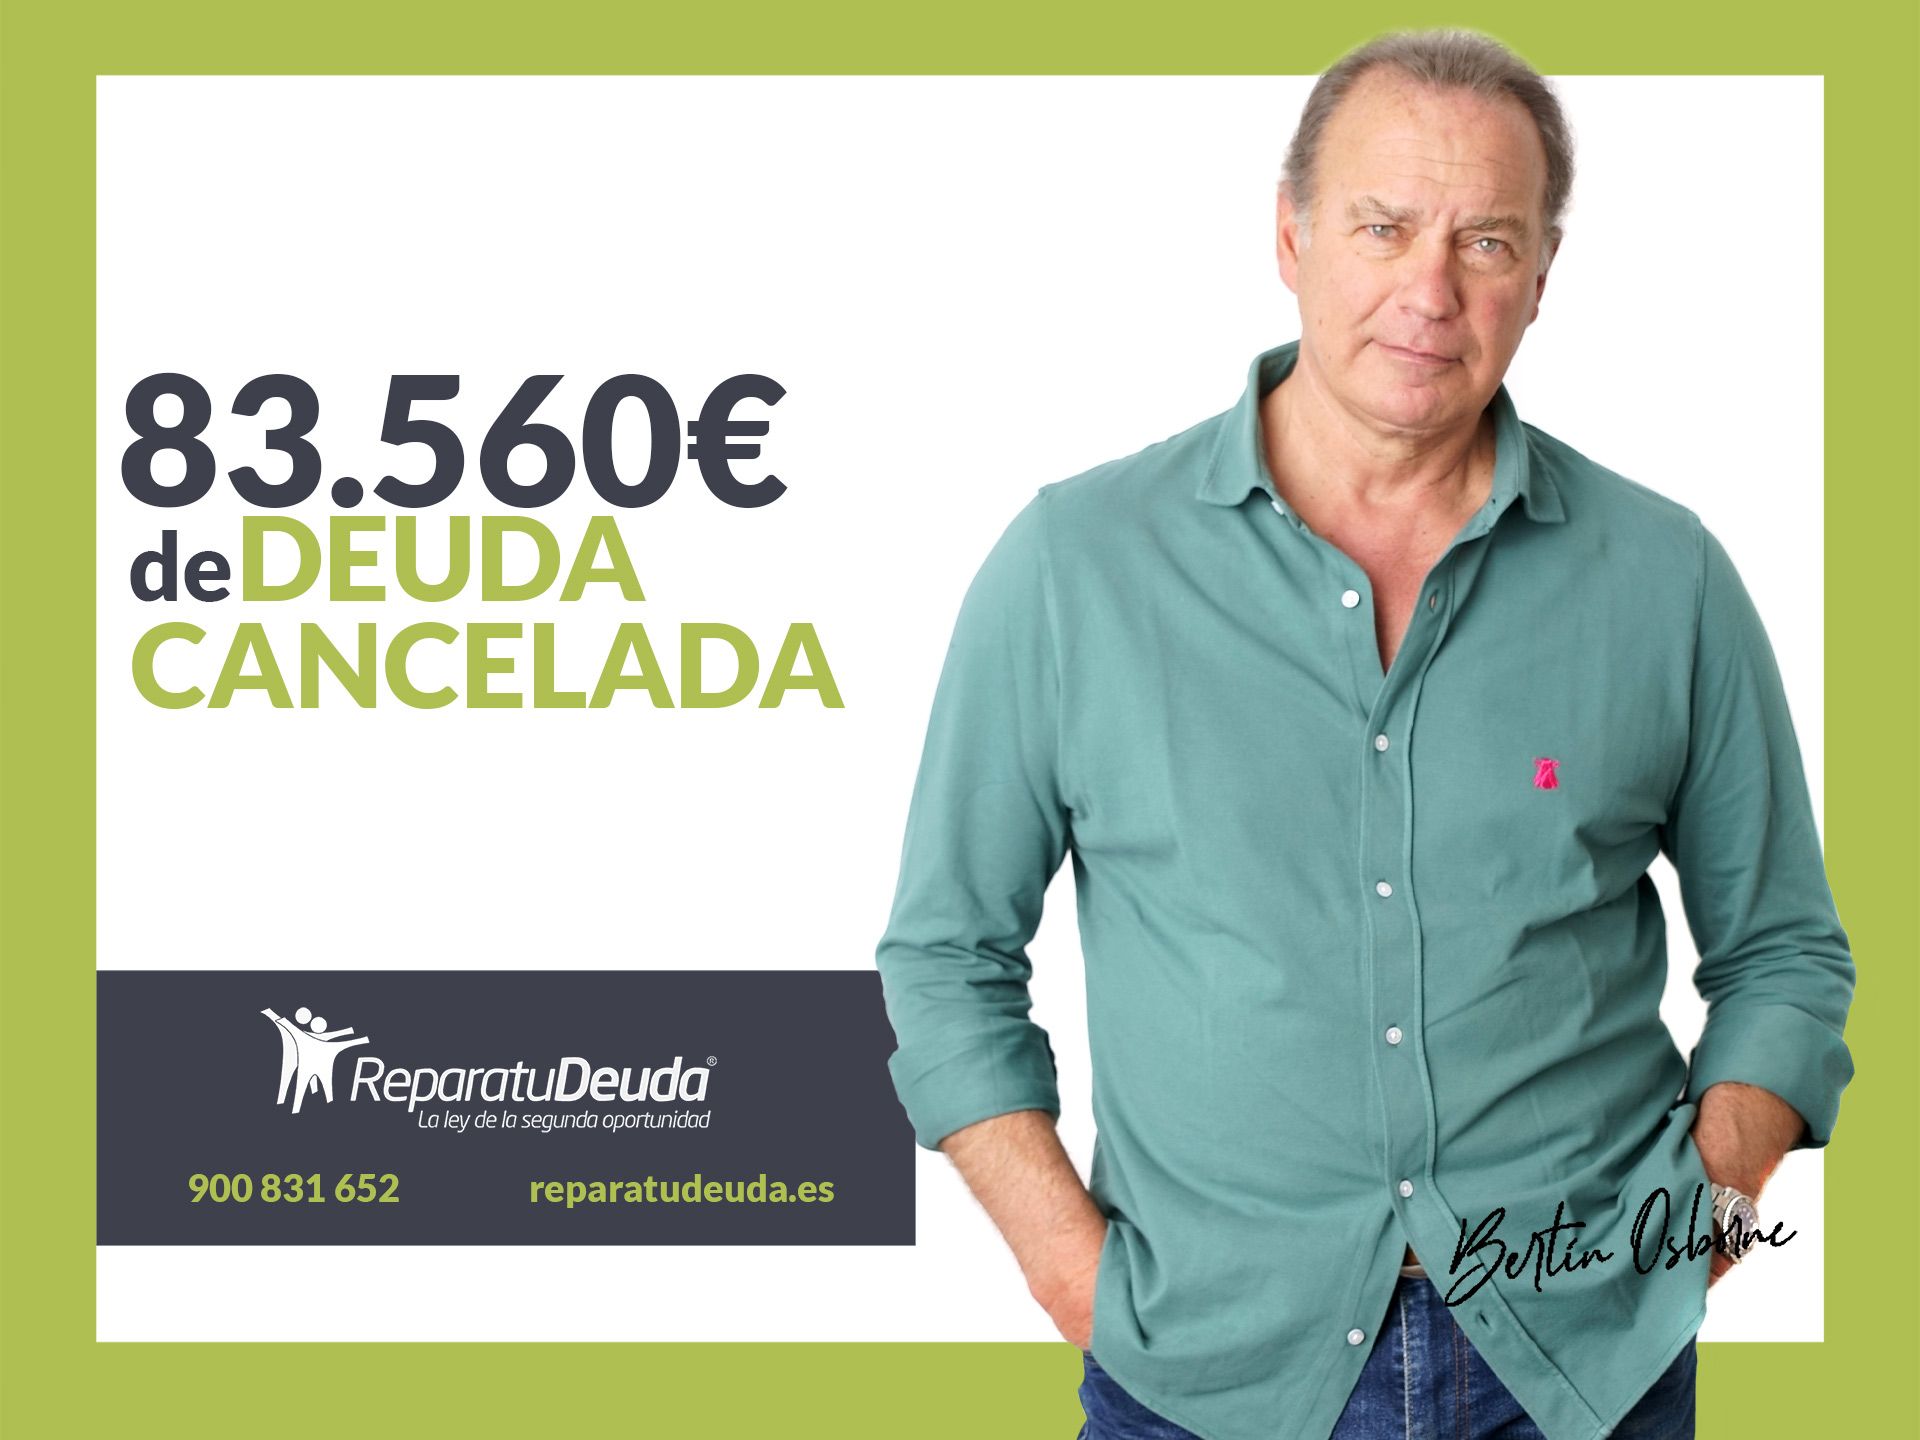 Repara tu Deuda Abogados cancela 83.560 ? en Vigo (Pontevedra) con la Ley de Segunda Oportunidad